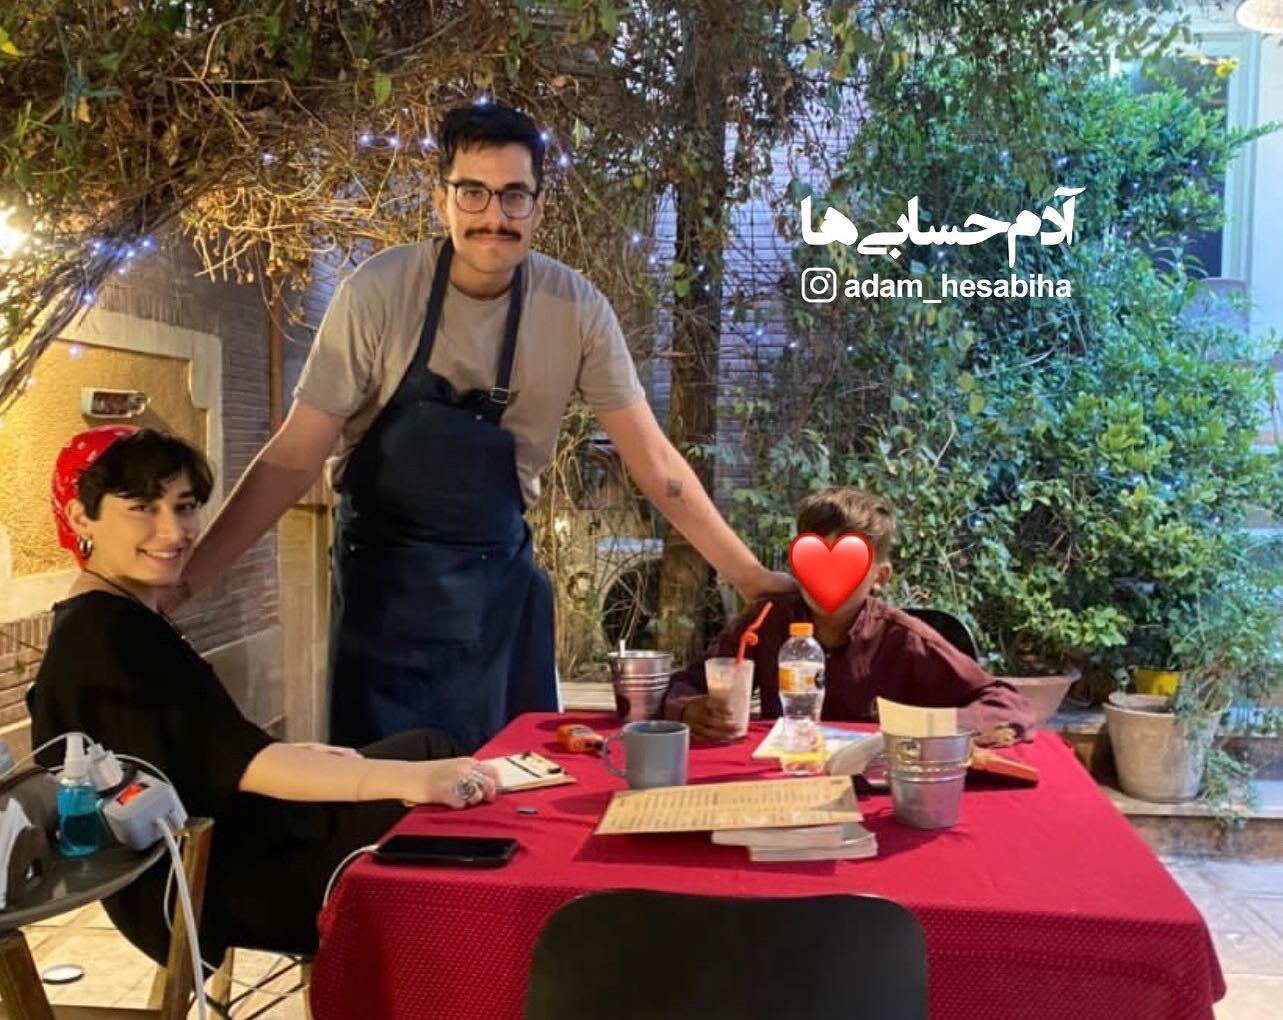 این دختر و پسرِ تهرانی، حال همه را خوب کردند